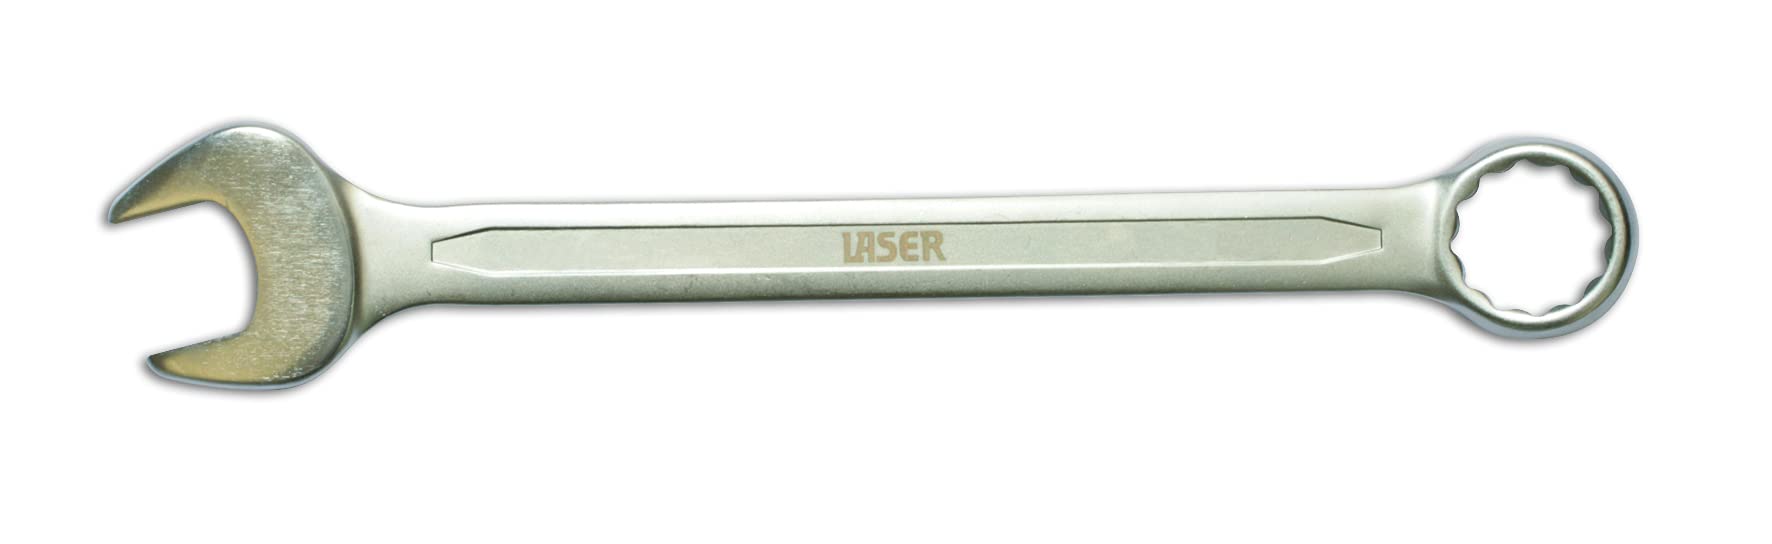 Laser 3057 Ringmaulschlüssel, von Laser